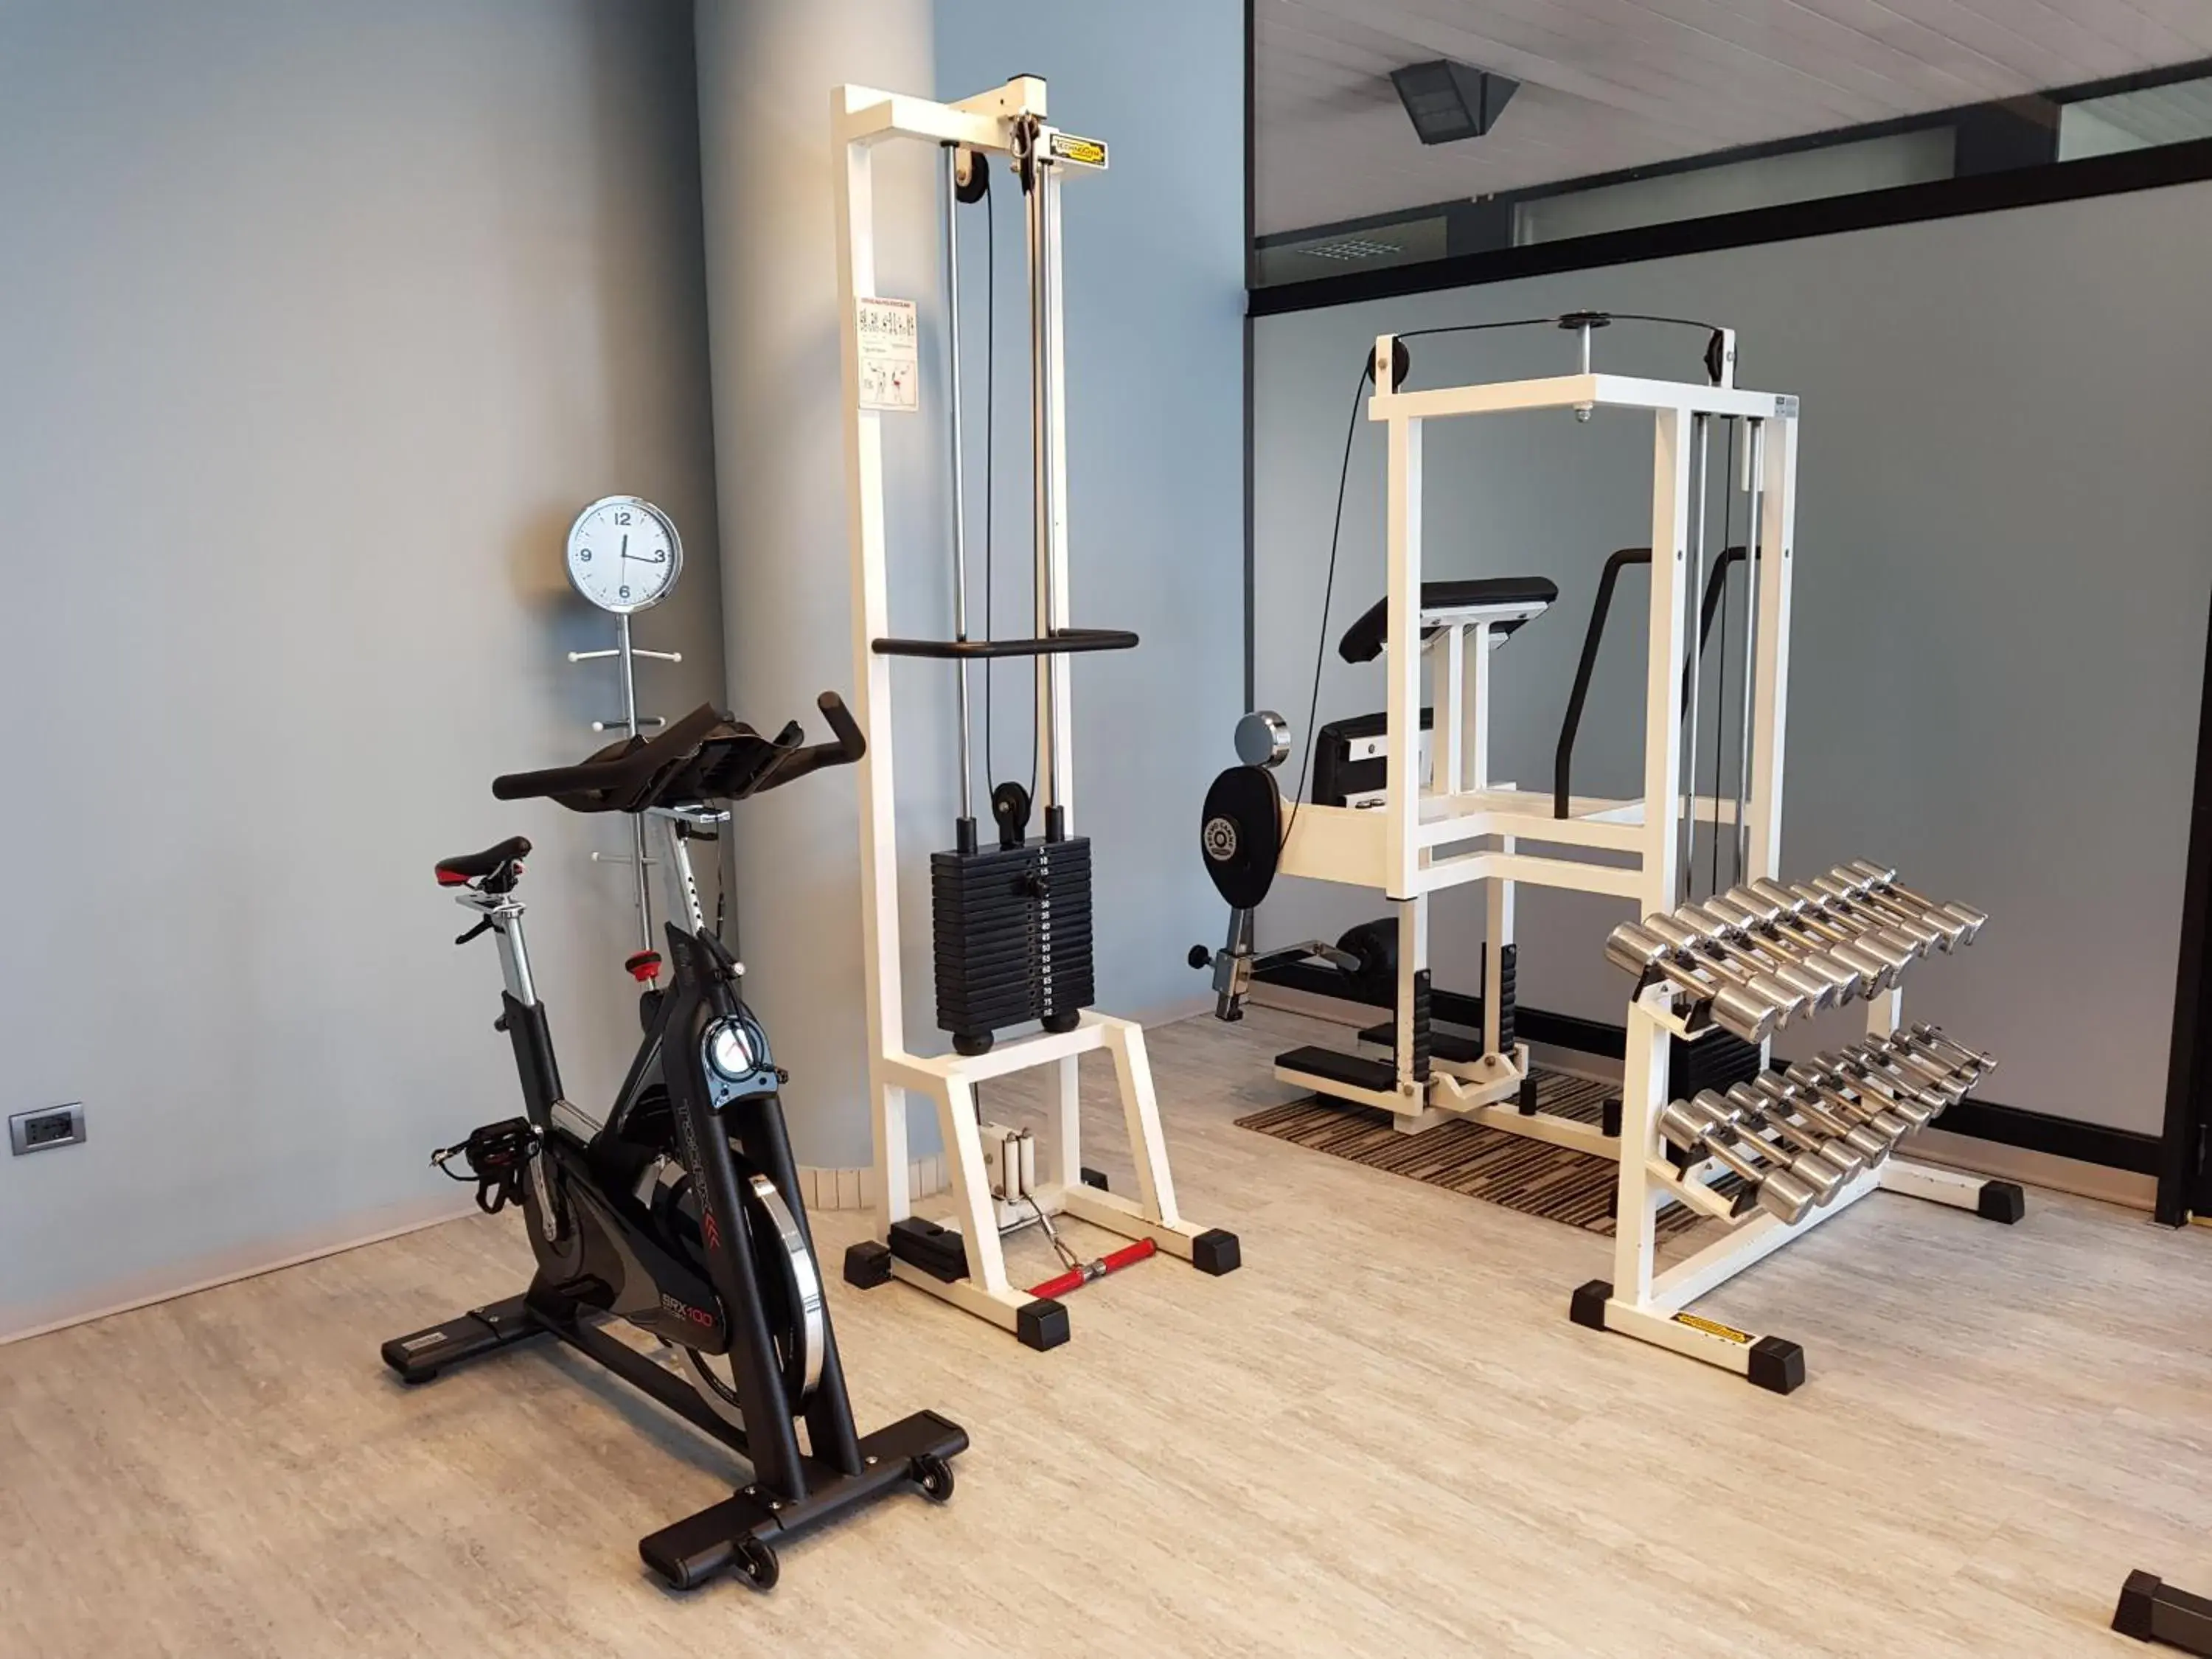 Fitness centre/facilities, Fitness Center/Facilities in Hotel Ristorante I Castelli